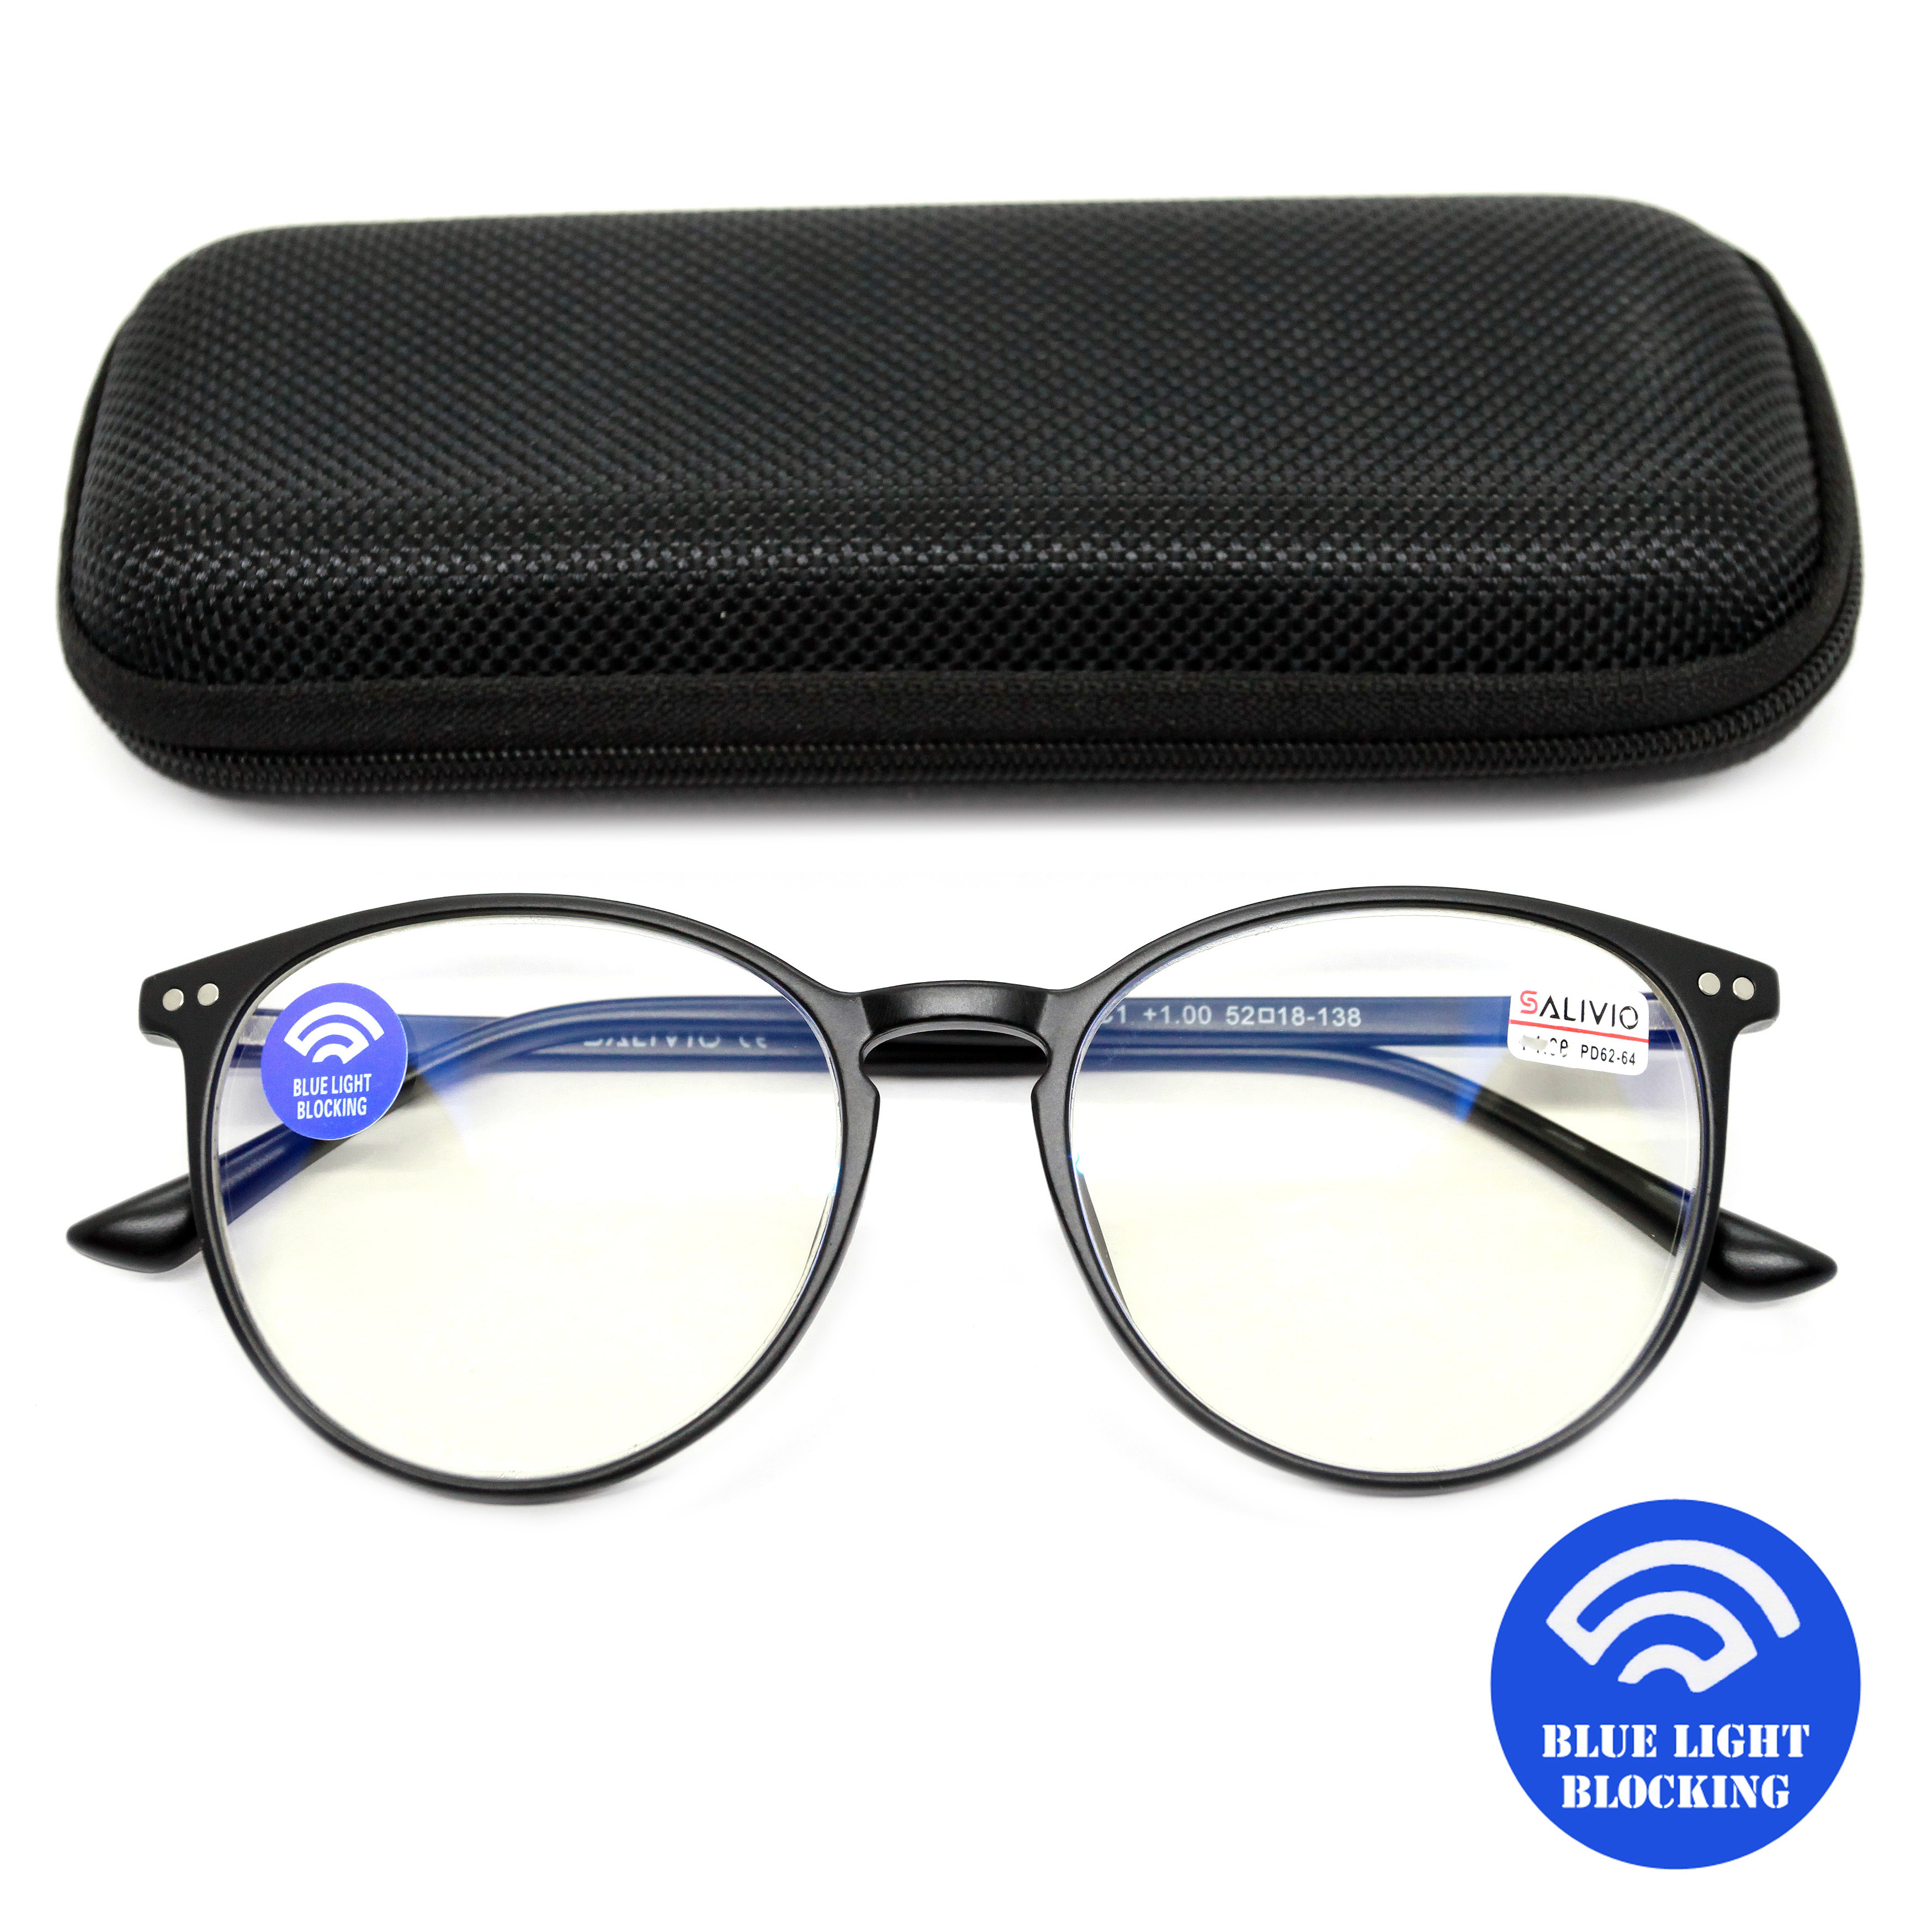 Готовые очки Salivio 0017 +3,50, c футляром, BLUE BLOCKER, черный, РЦ 62-64